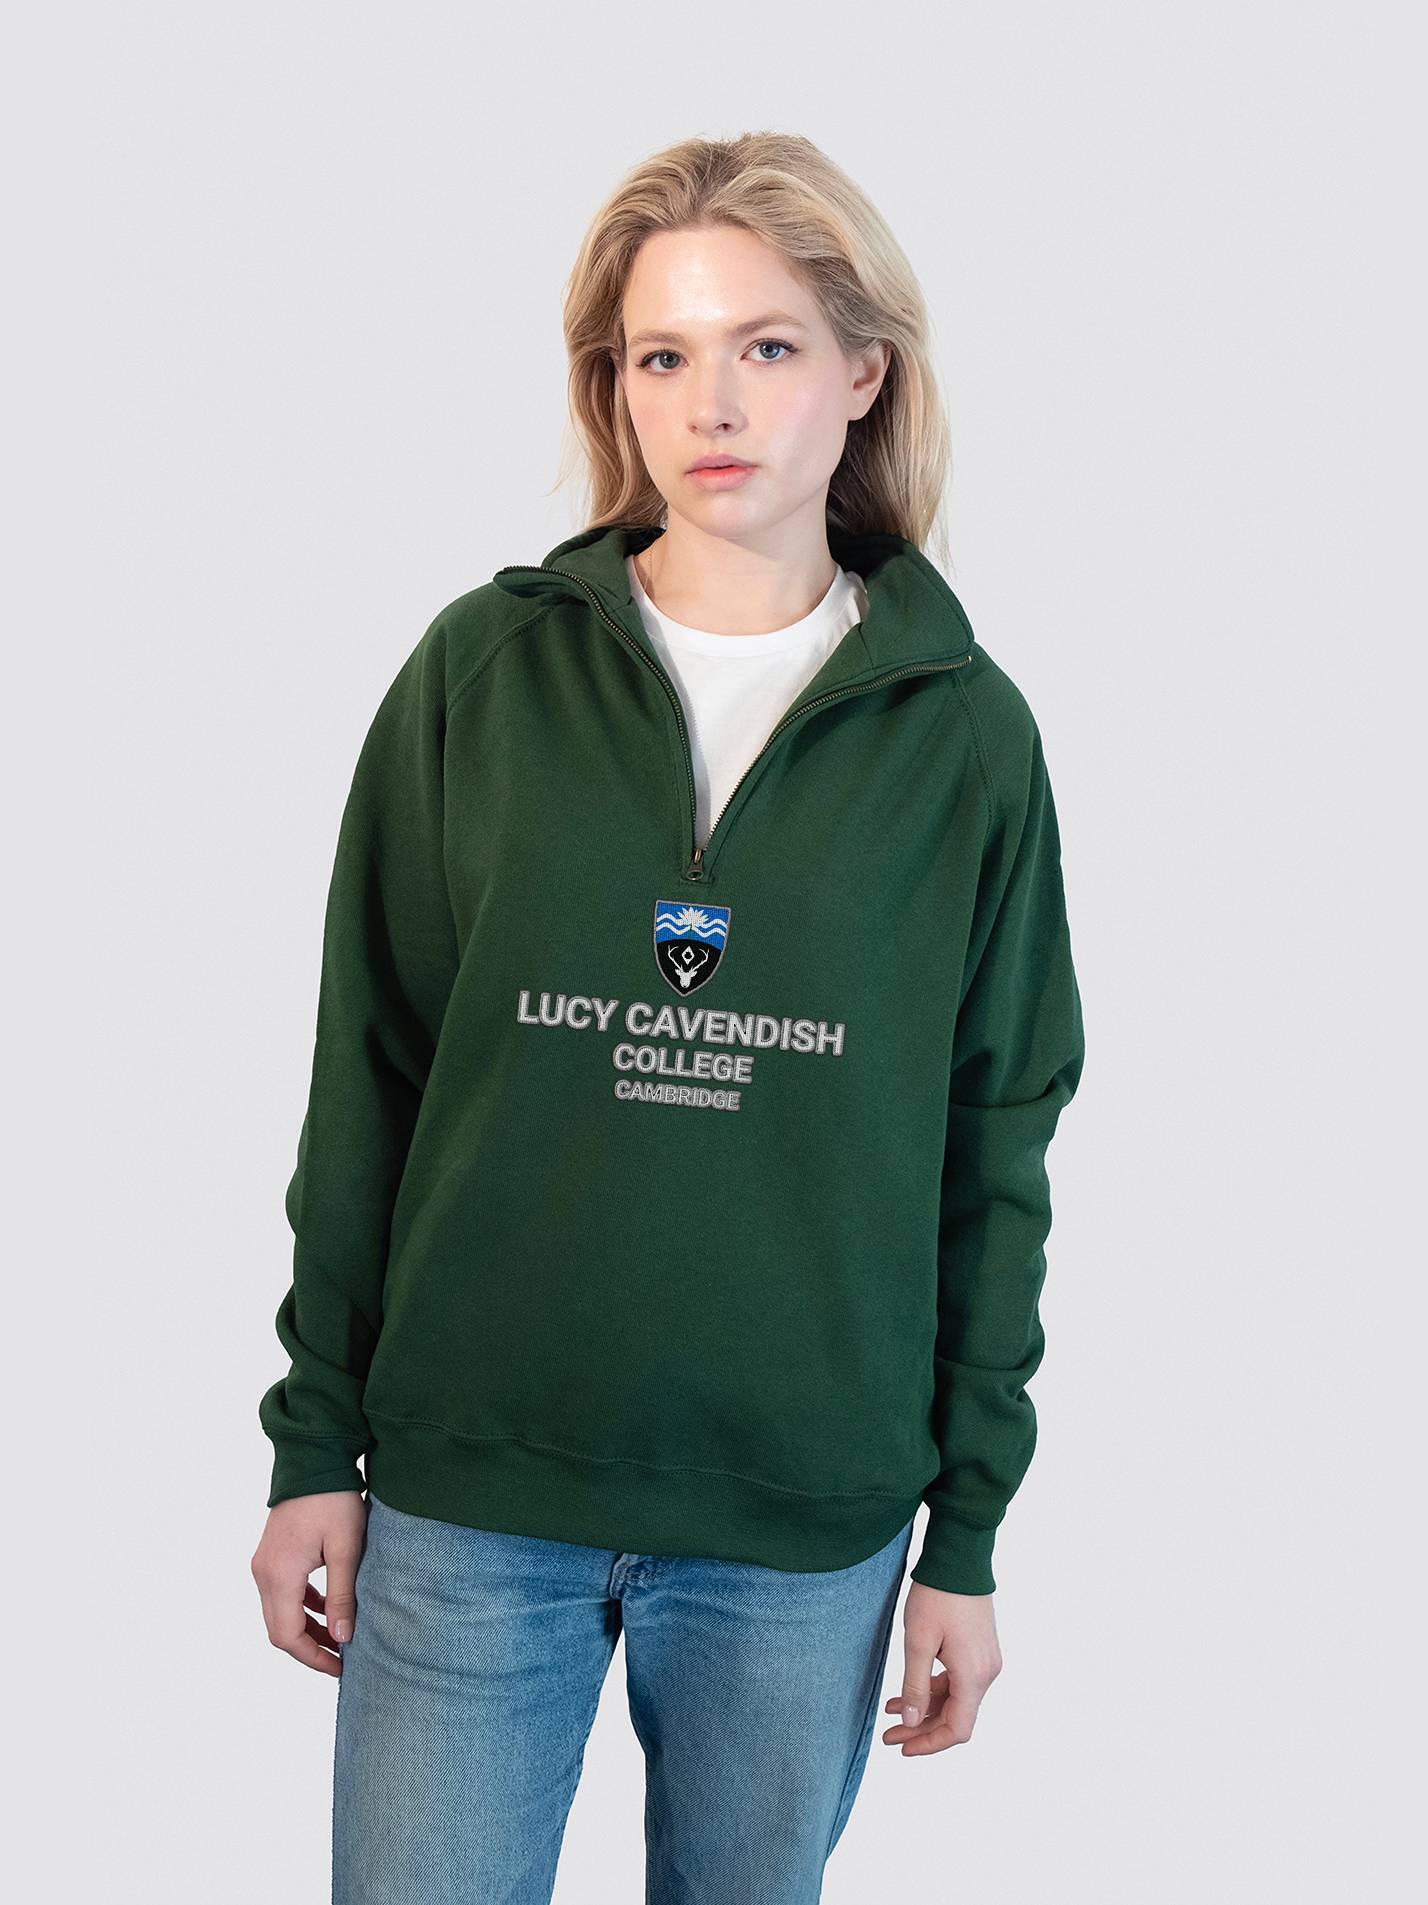 Lucy Cavendish College Cambridge MCR Heritage Unisex 1/4 Zip Sweatshirt